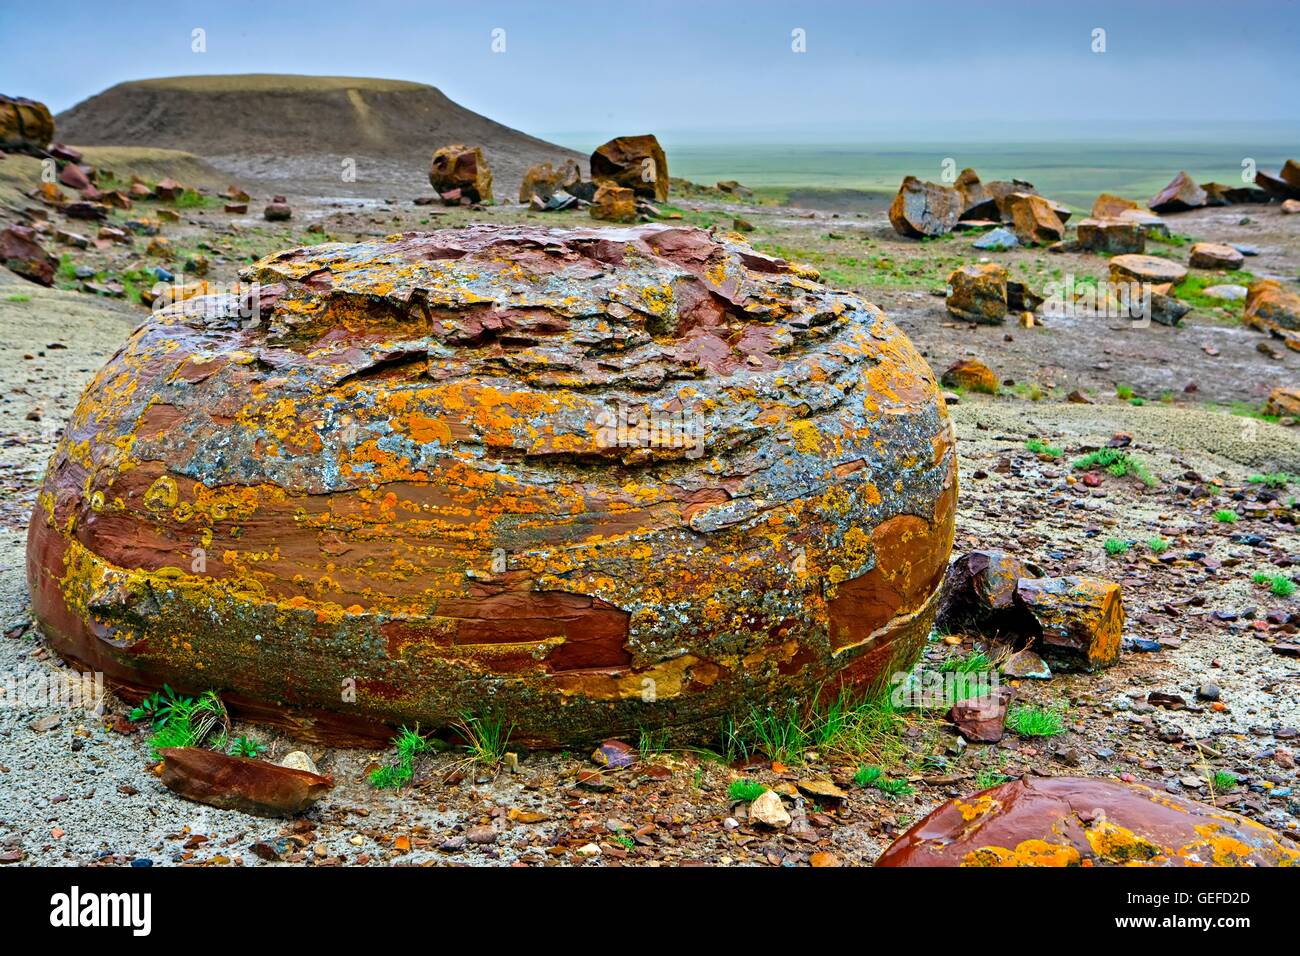 Geographie / Reisen, Kanada, Alberta, große Felsbrocken, die Sandstein-Konkretionen in prähistorischen See gesehen in den Red Rock Coulee Naturgebiet gebildet sind befindet sich 65 k Stockfoto